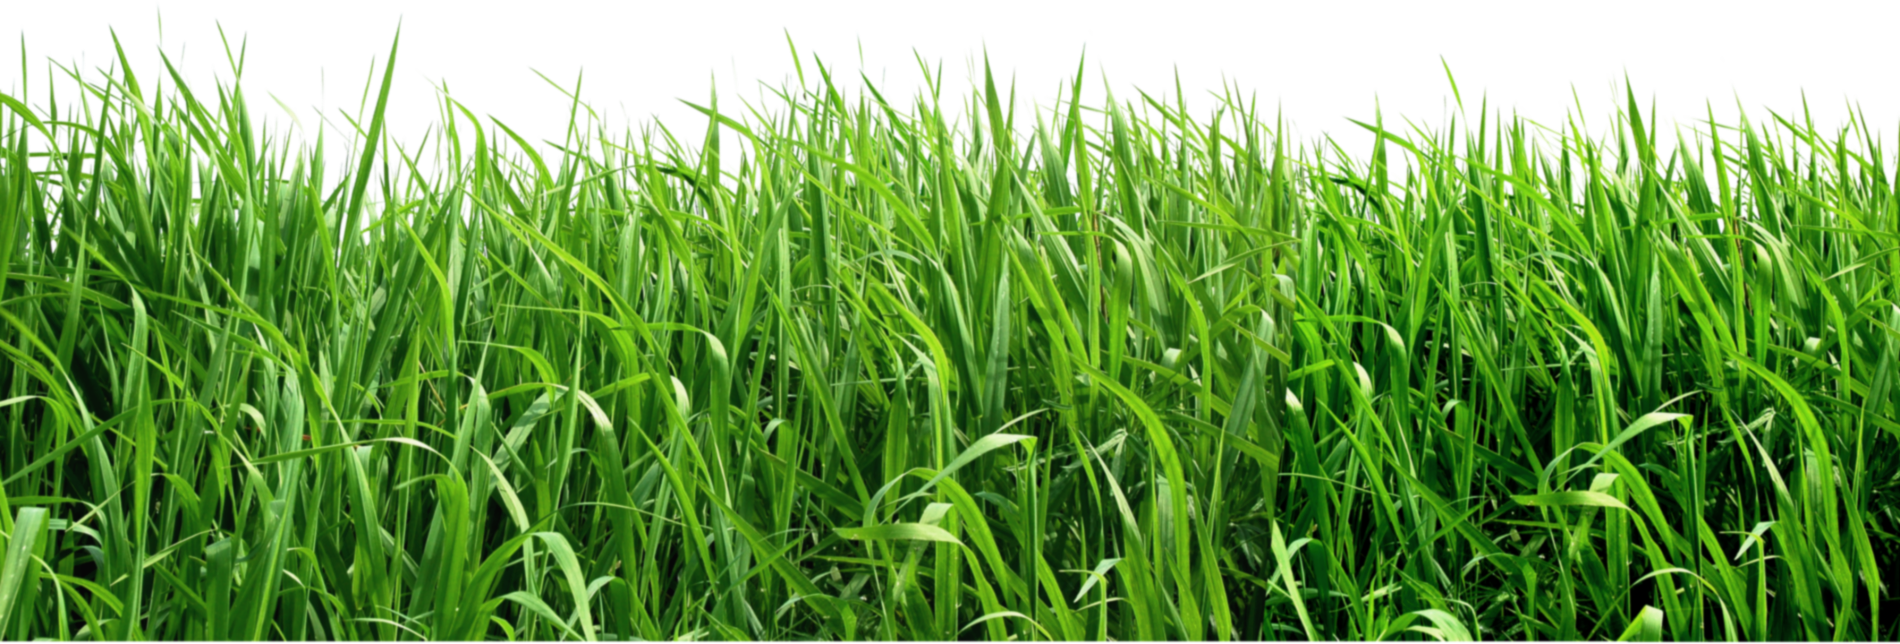 Imagen PNG de la hierba